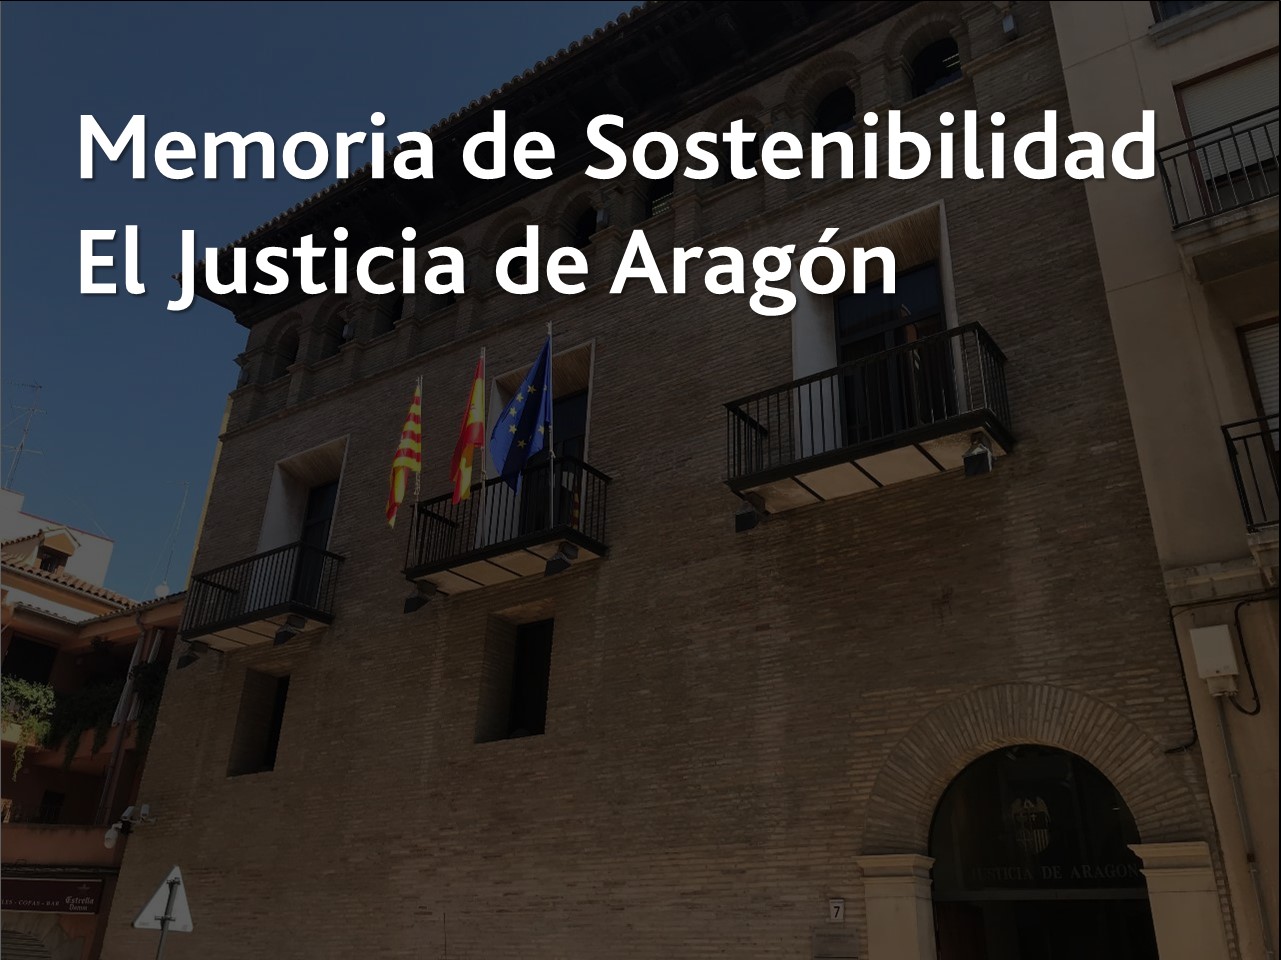 Memoria de Sostenibilidad El Justicia de Aragón - Acceso al documento pdf